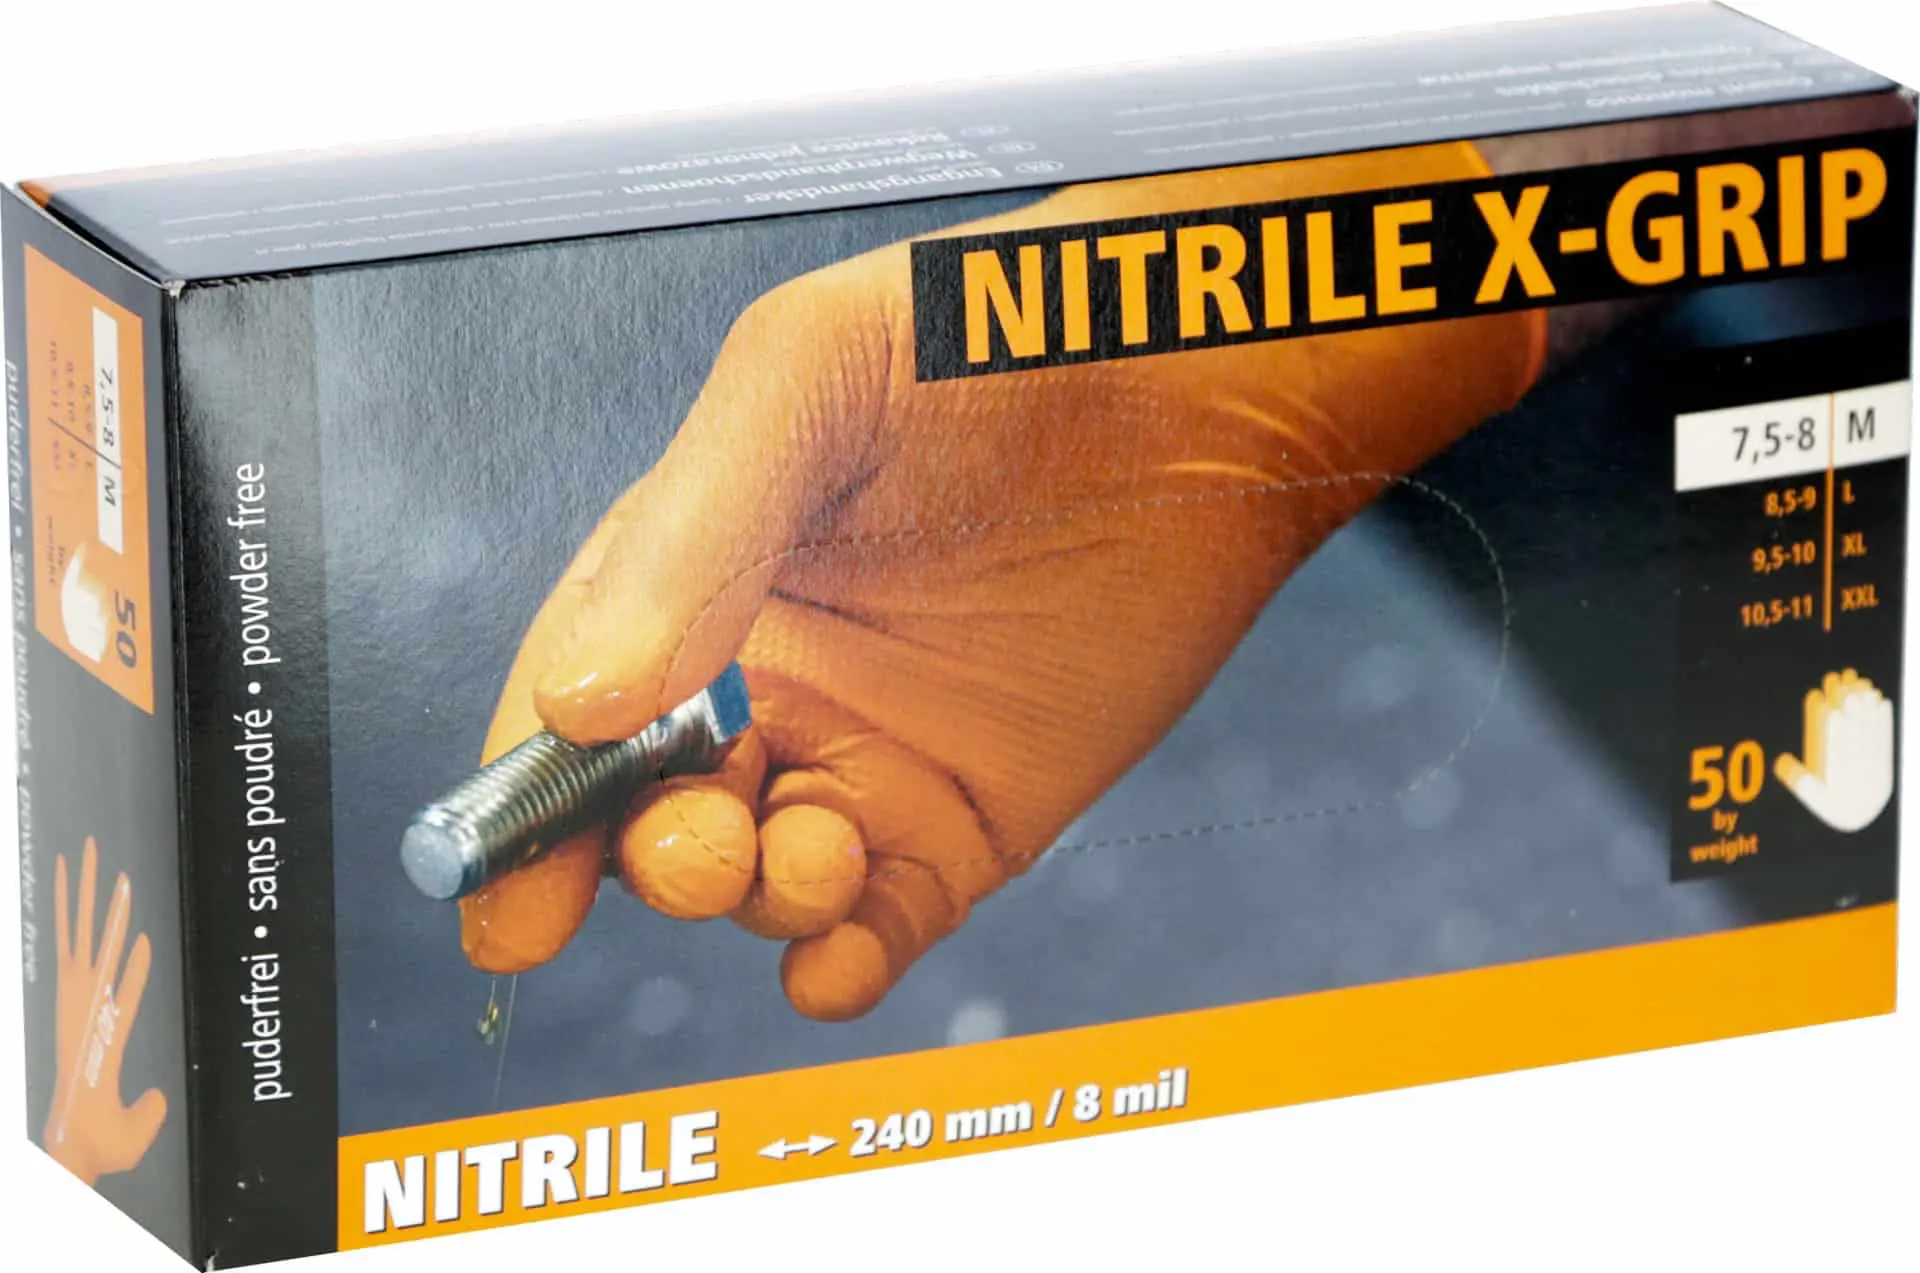 Nitril Einmalhandschuh X-Grip 240 mm, 50 St, Gr. XL, orange